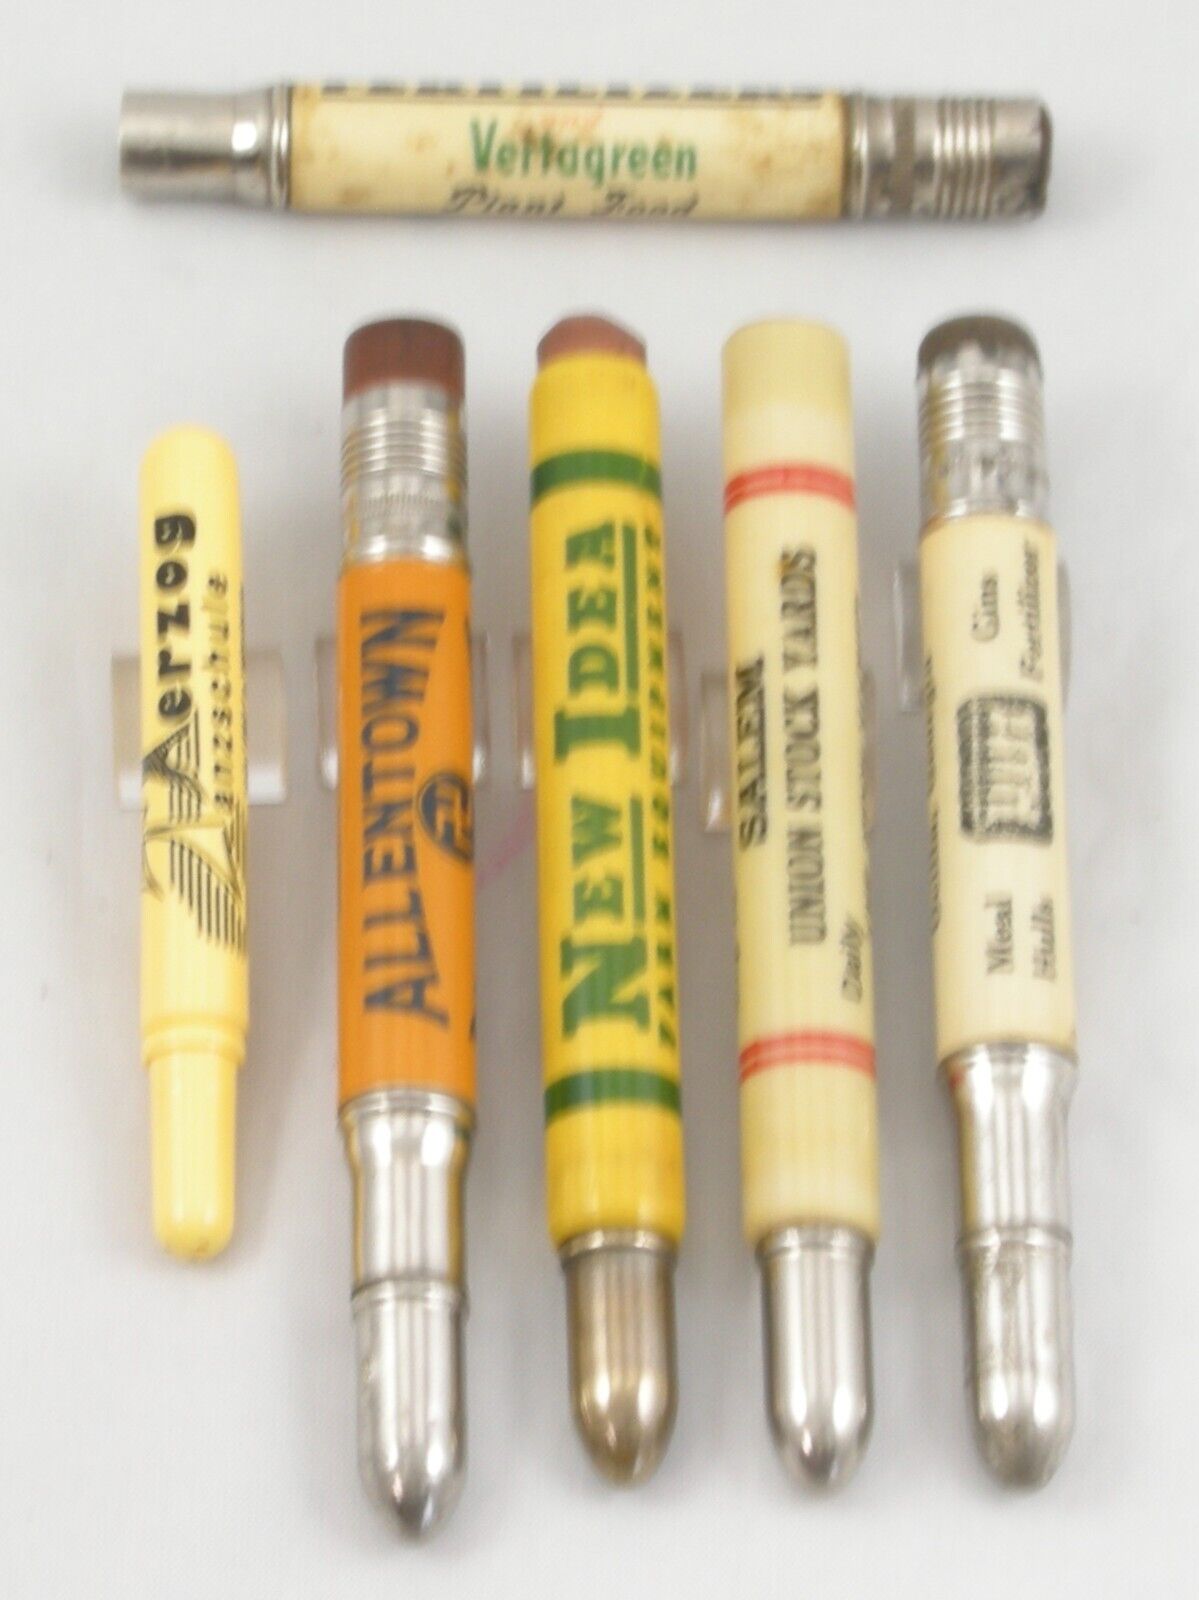 4 Vintage Bullet Advertising Pencils - EXCELLENT - Plus Parts - 1940-50\'s